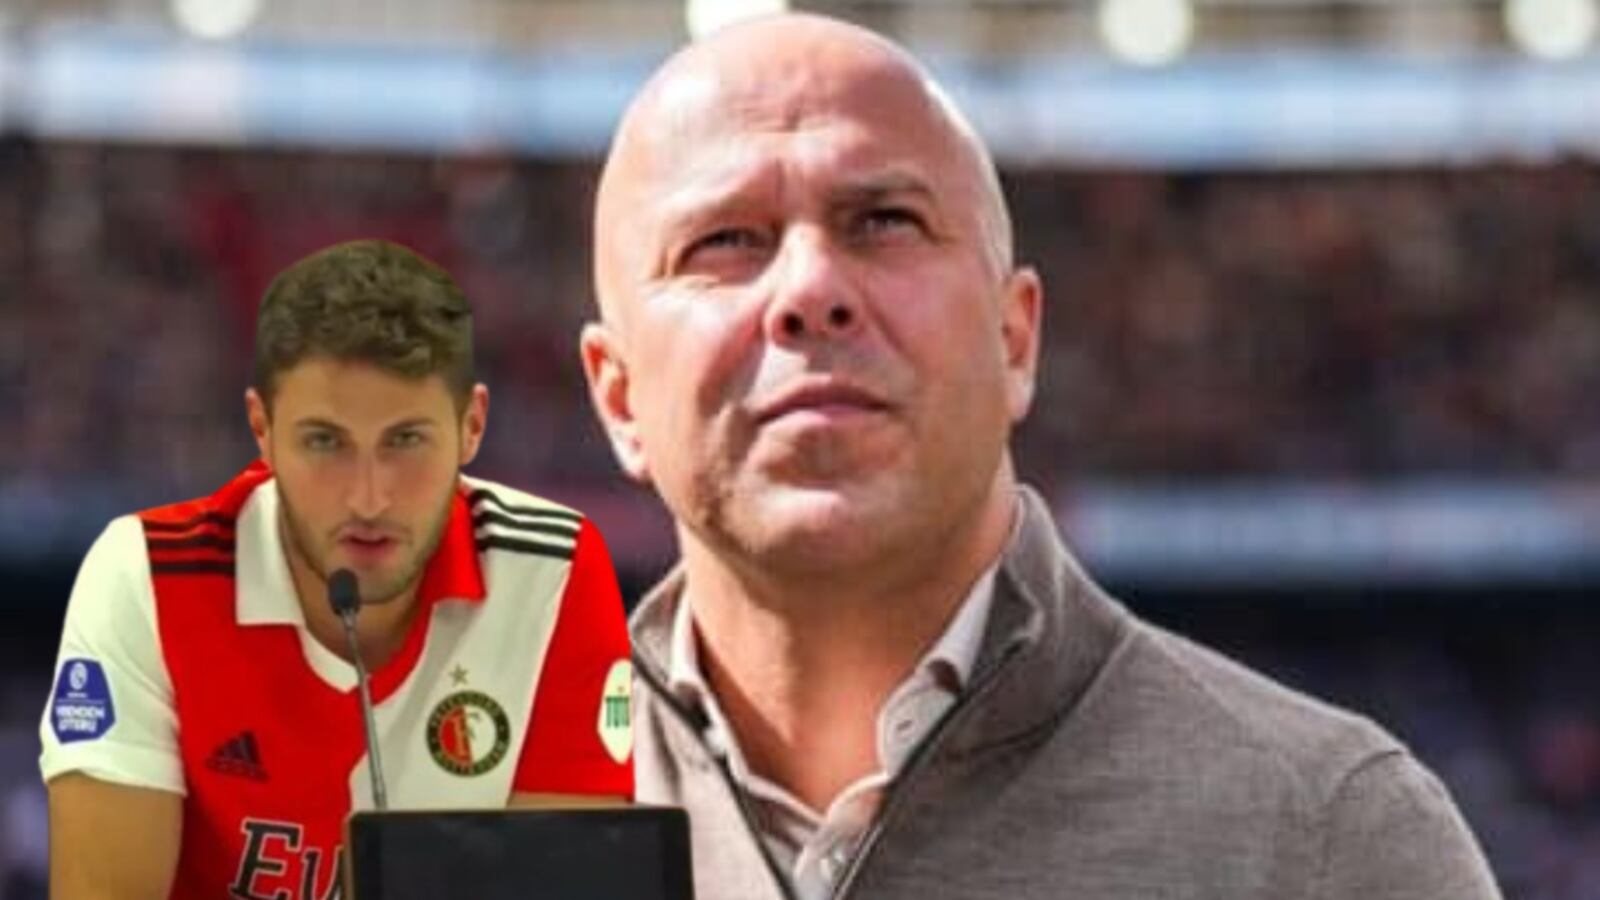 Lo que dijo Santi Giménez luego de que le quitaran la titularidad en Feyenoord